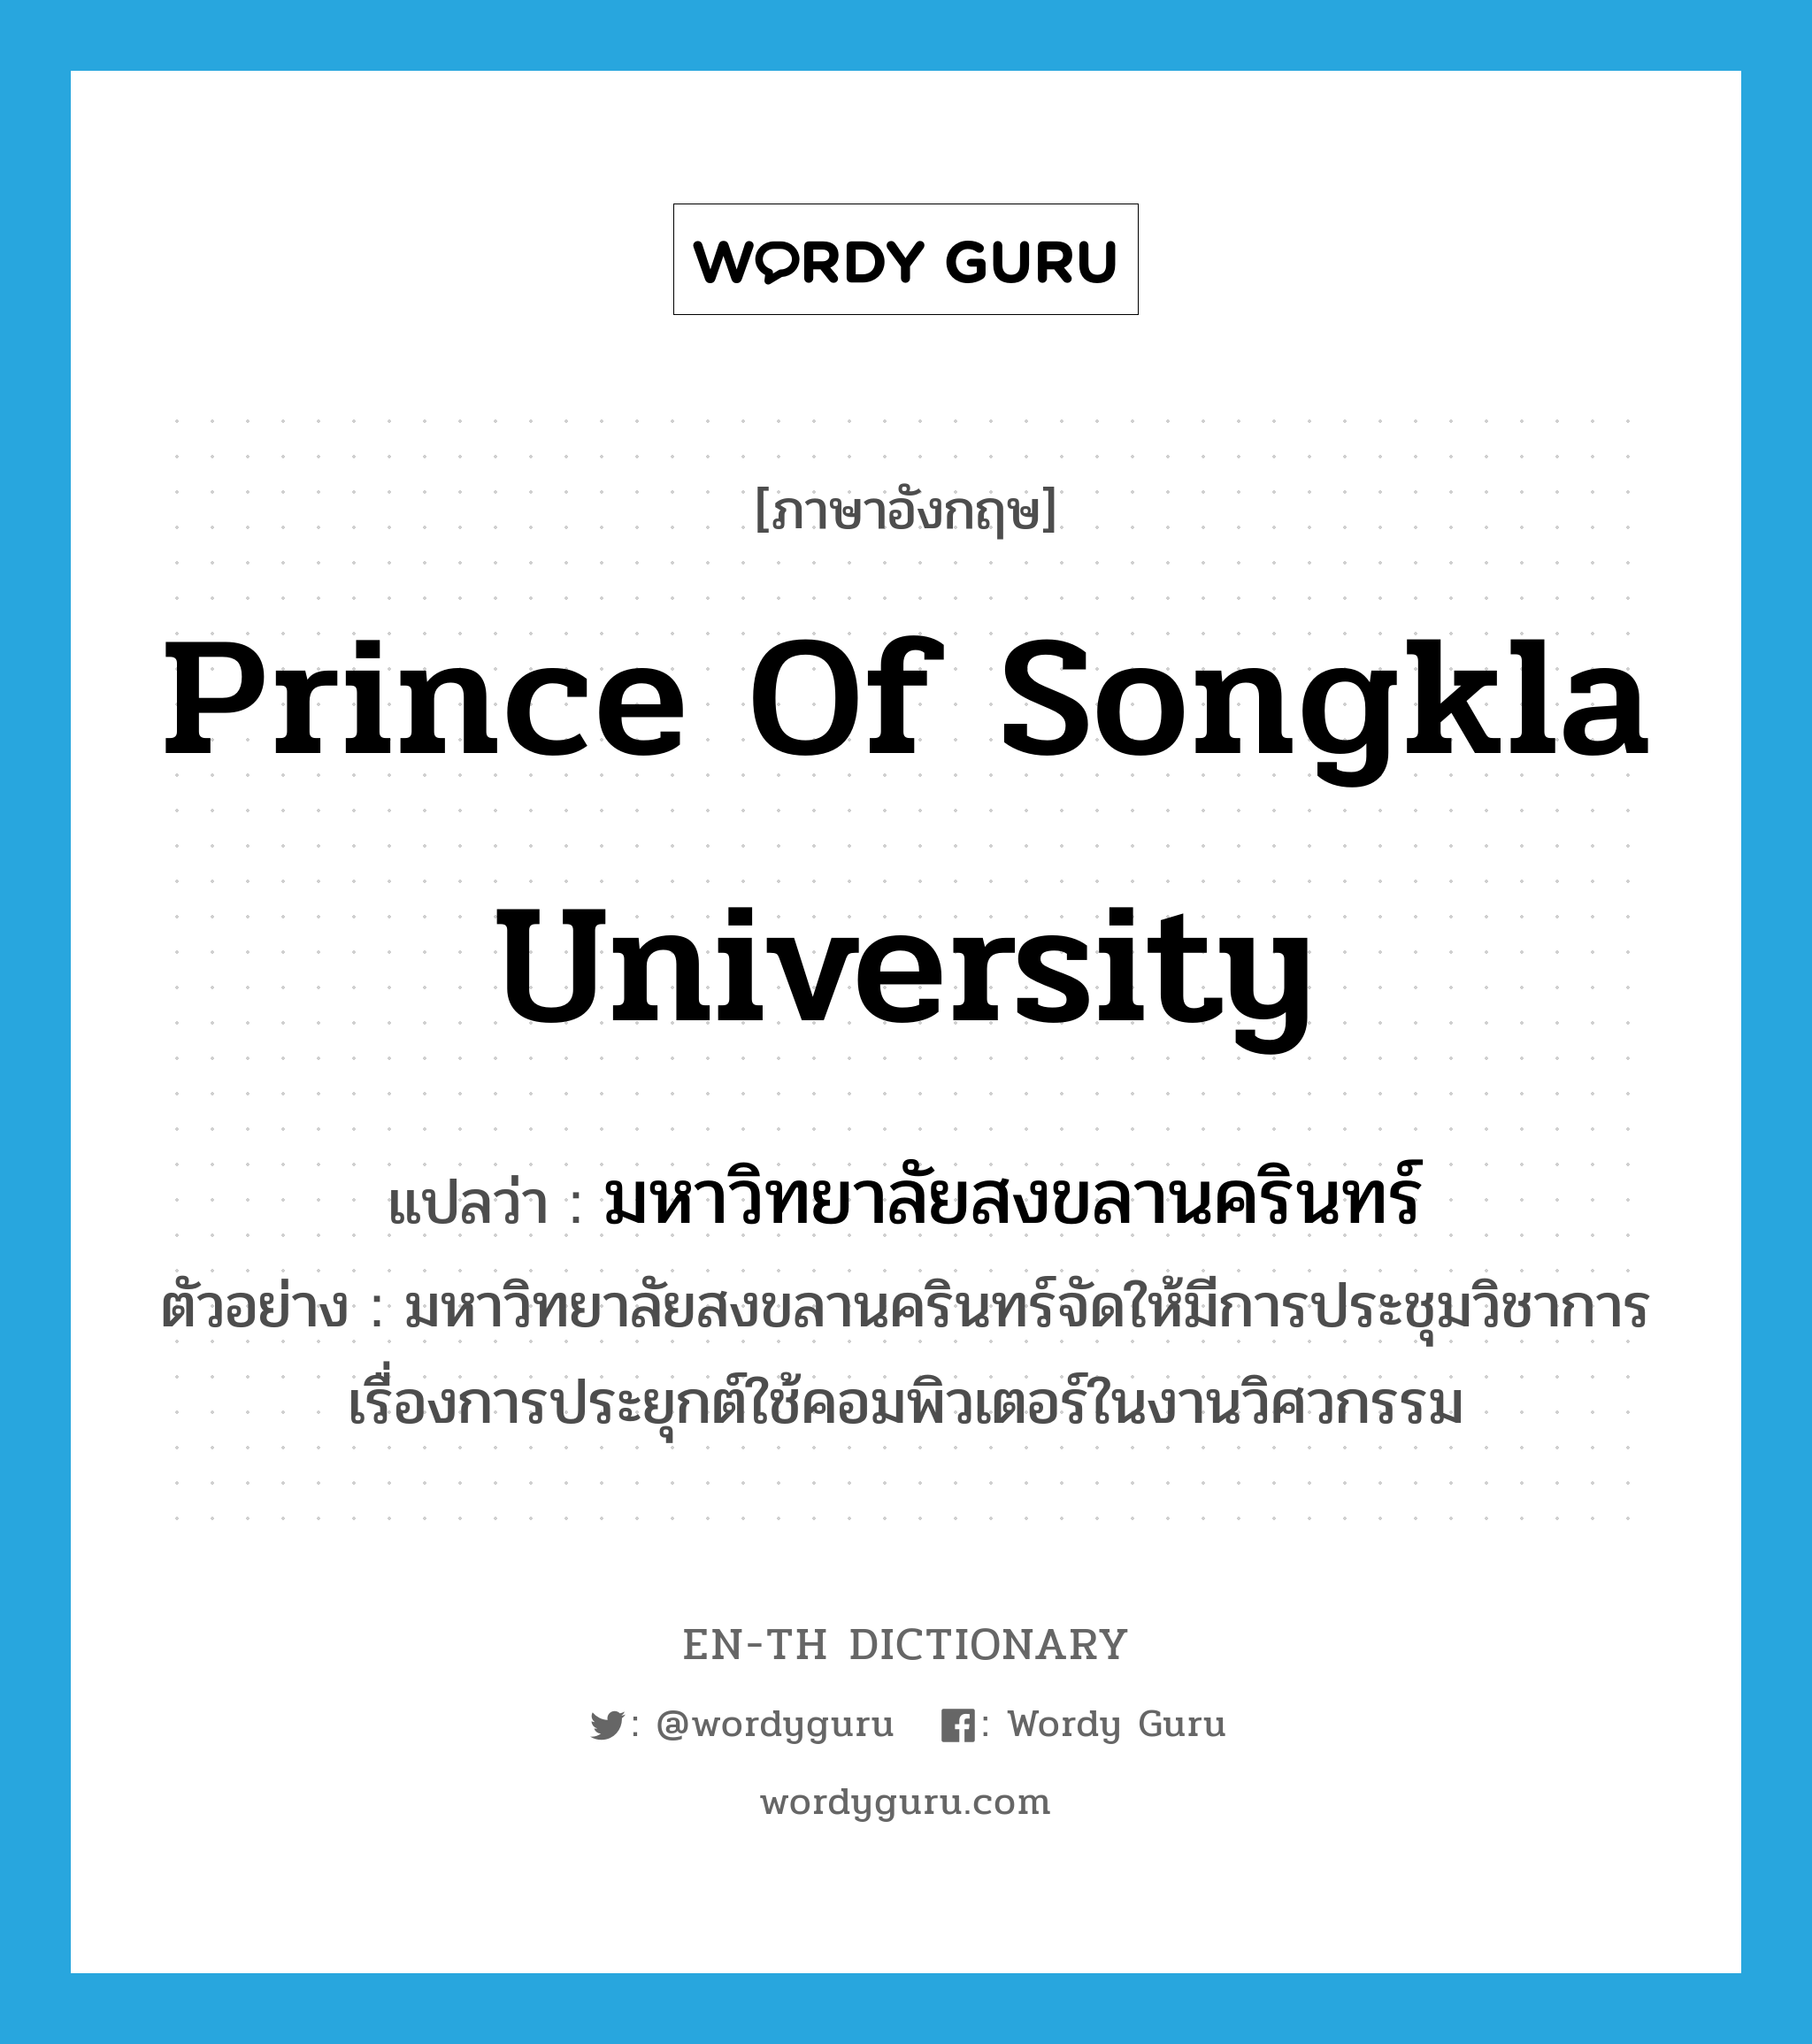 มหาวิทยาลัยสงขลานครินทร์ ภาษาอังกฤษ?, คำศัพท์ภาษาอังกฤษ มหาวิทยาลัยสงขลานครินทร์ แปลว่า Prince of Songkla University ประเภท N ตัวอย่าง มหาวิทยาลัยสงขลานครินทร์จัดให้มีการประชุมวิชาการเรื่องการประยุกต์ใช้คอมพิวเตอร์ในงานวิศวกรรม หมวด N